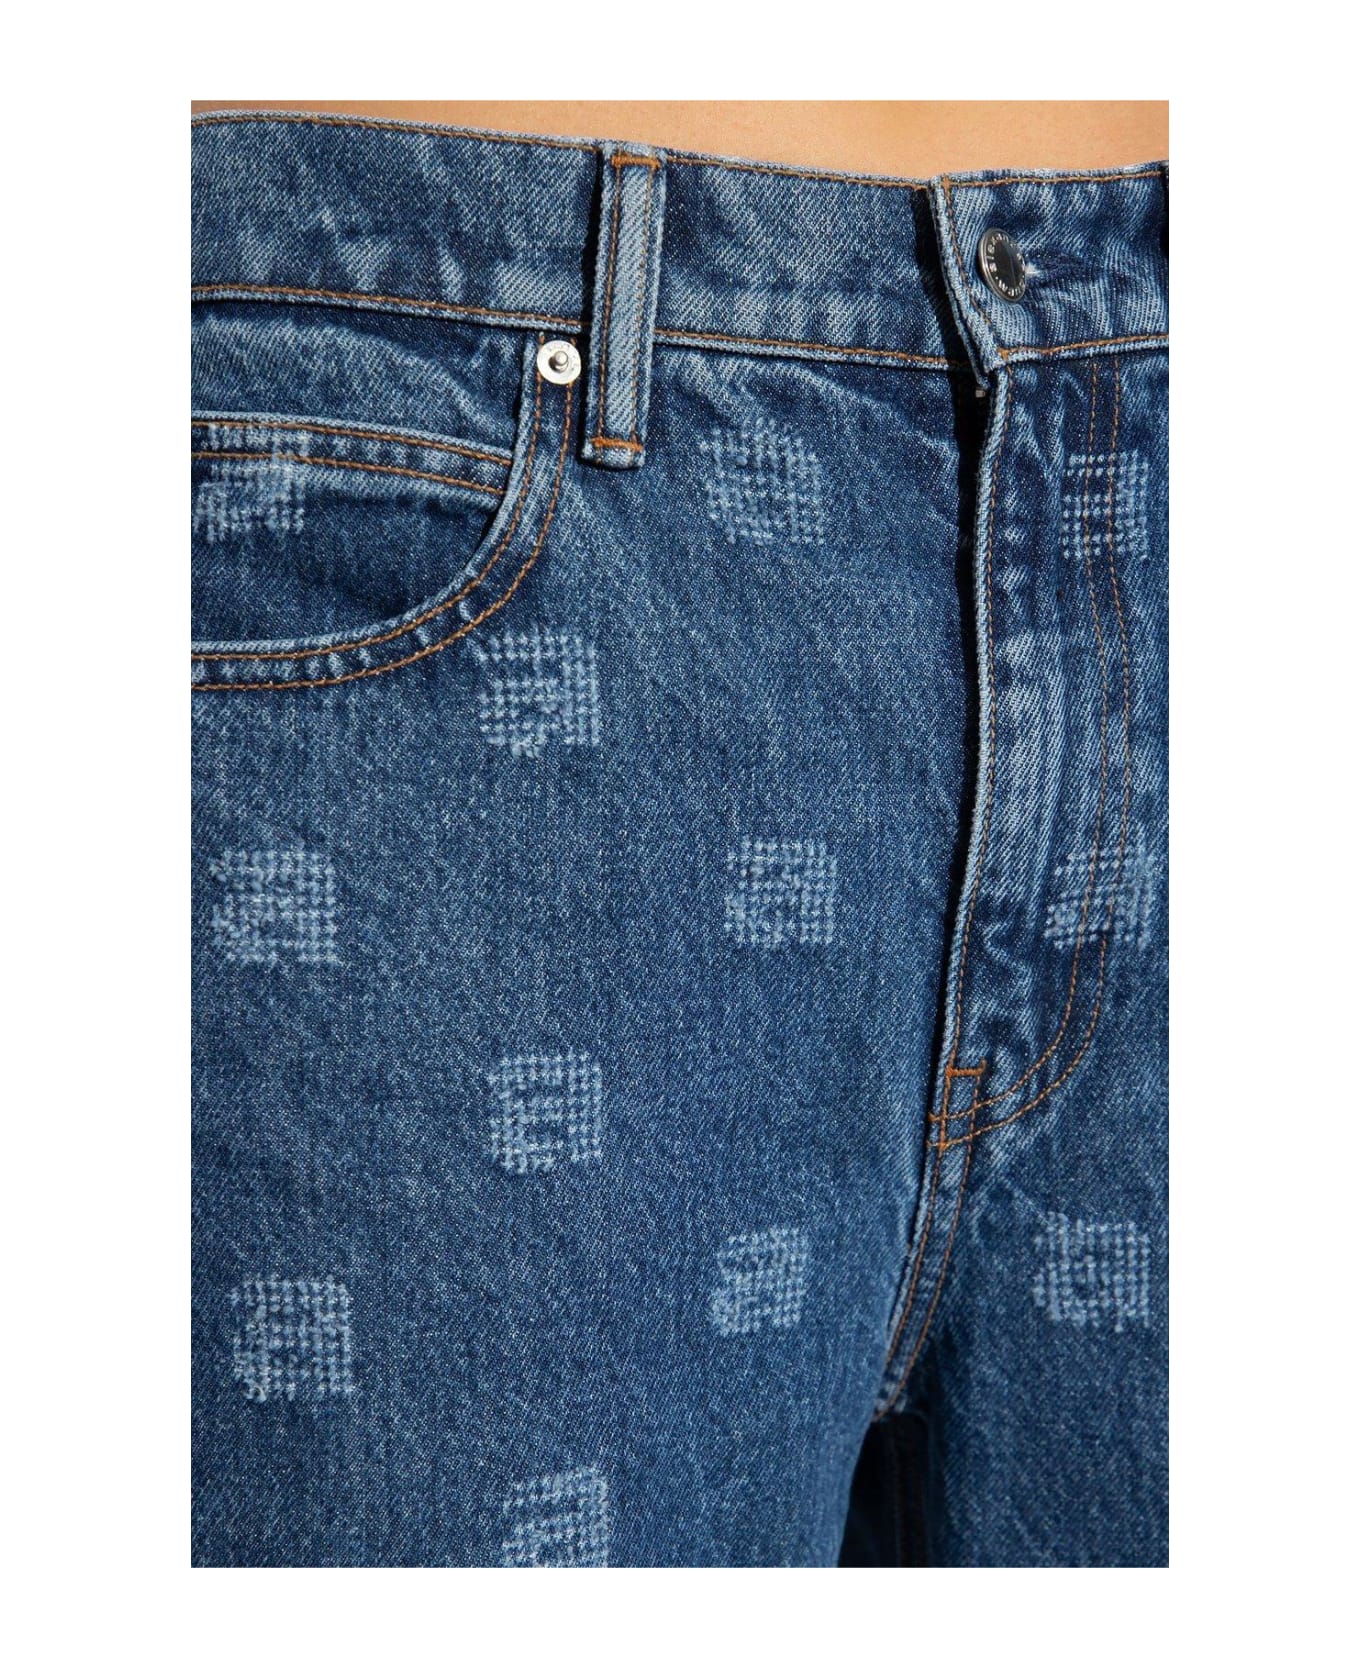 Alexander Wang Logo Detailed Jeans - Deep Blue